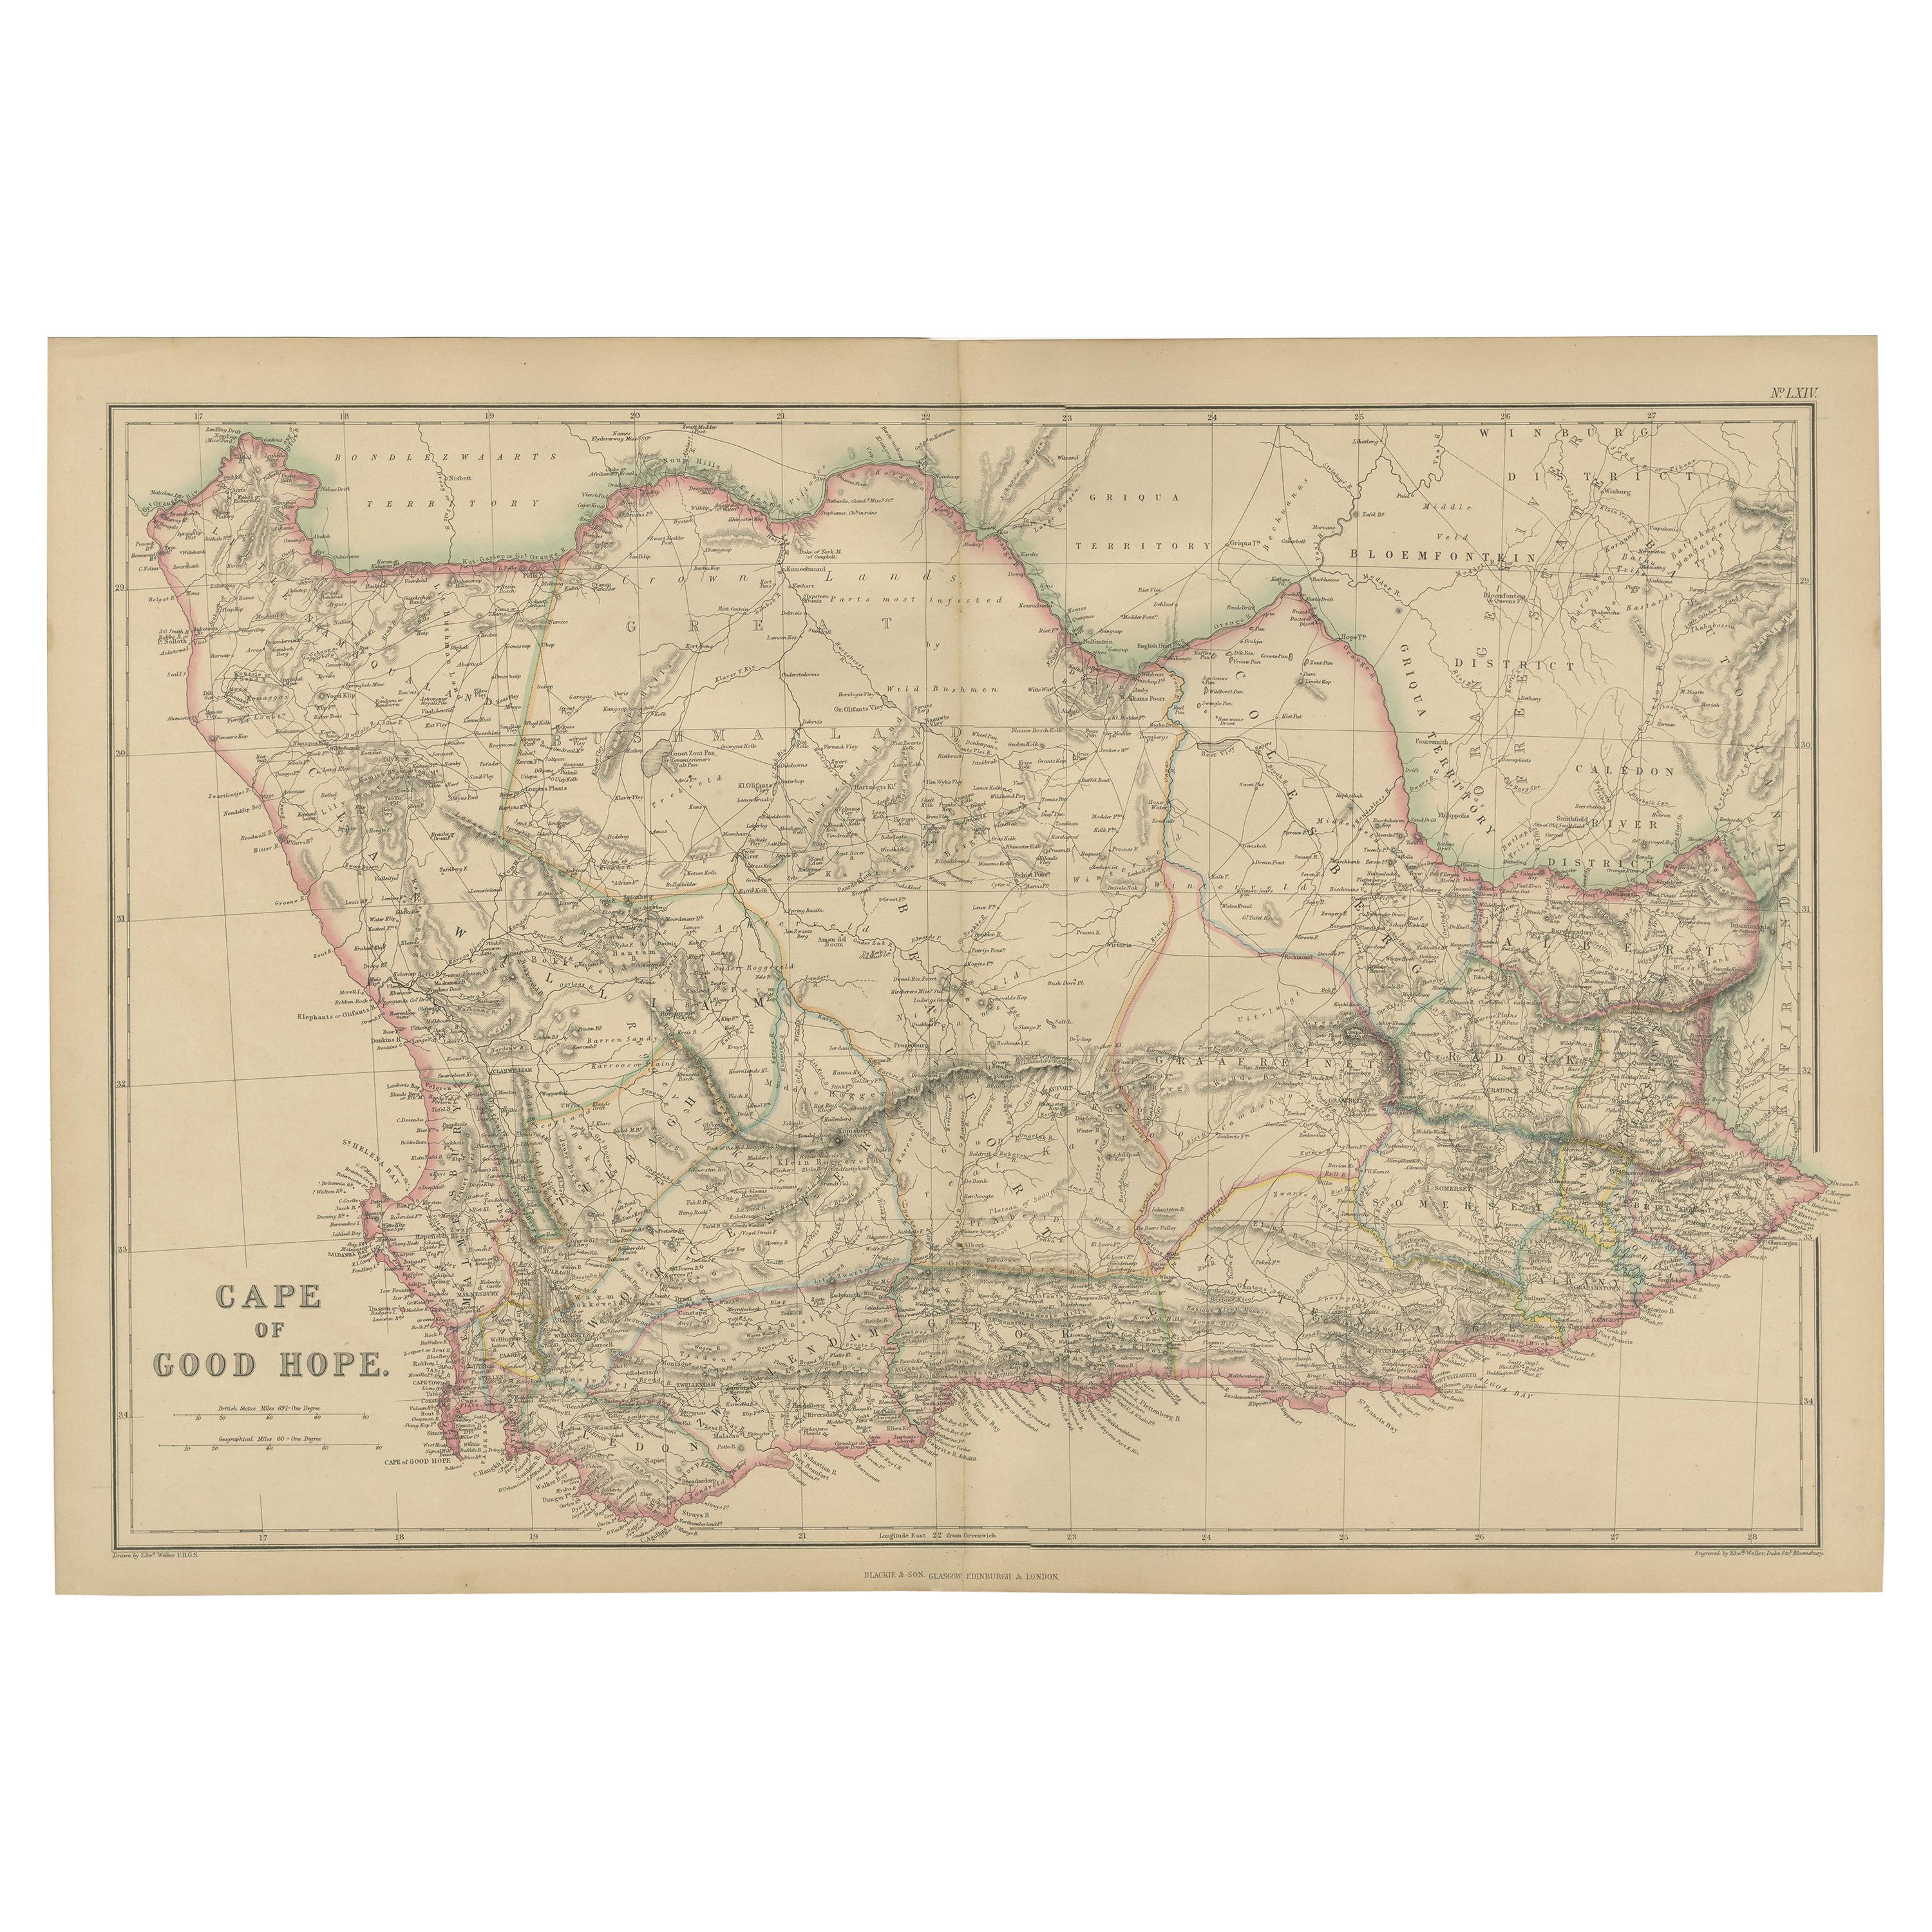 Carte ancienne du Cap de Bonne-Espérance par W. G. Blackie, 1859